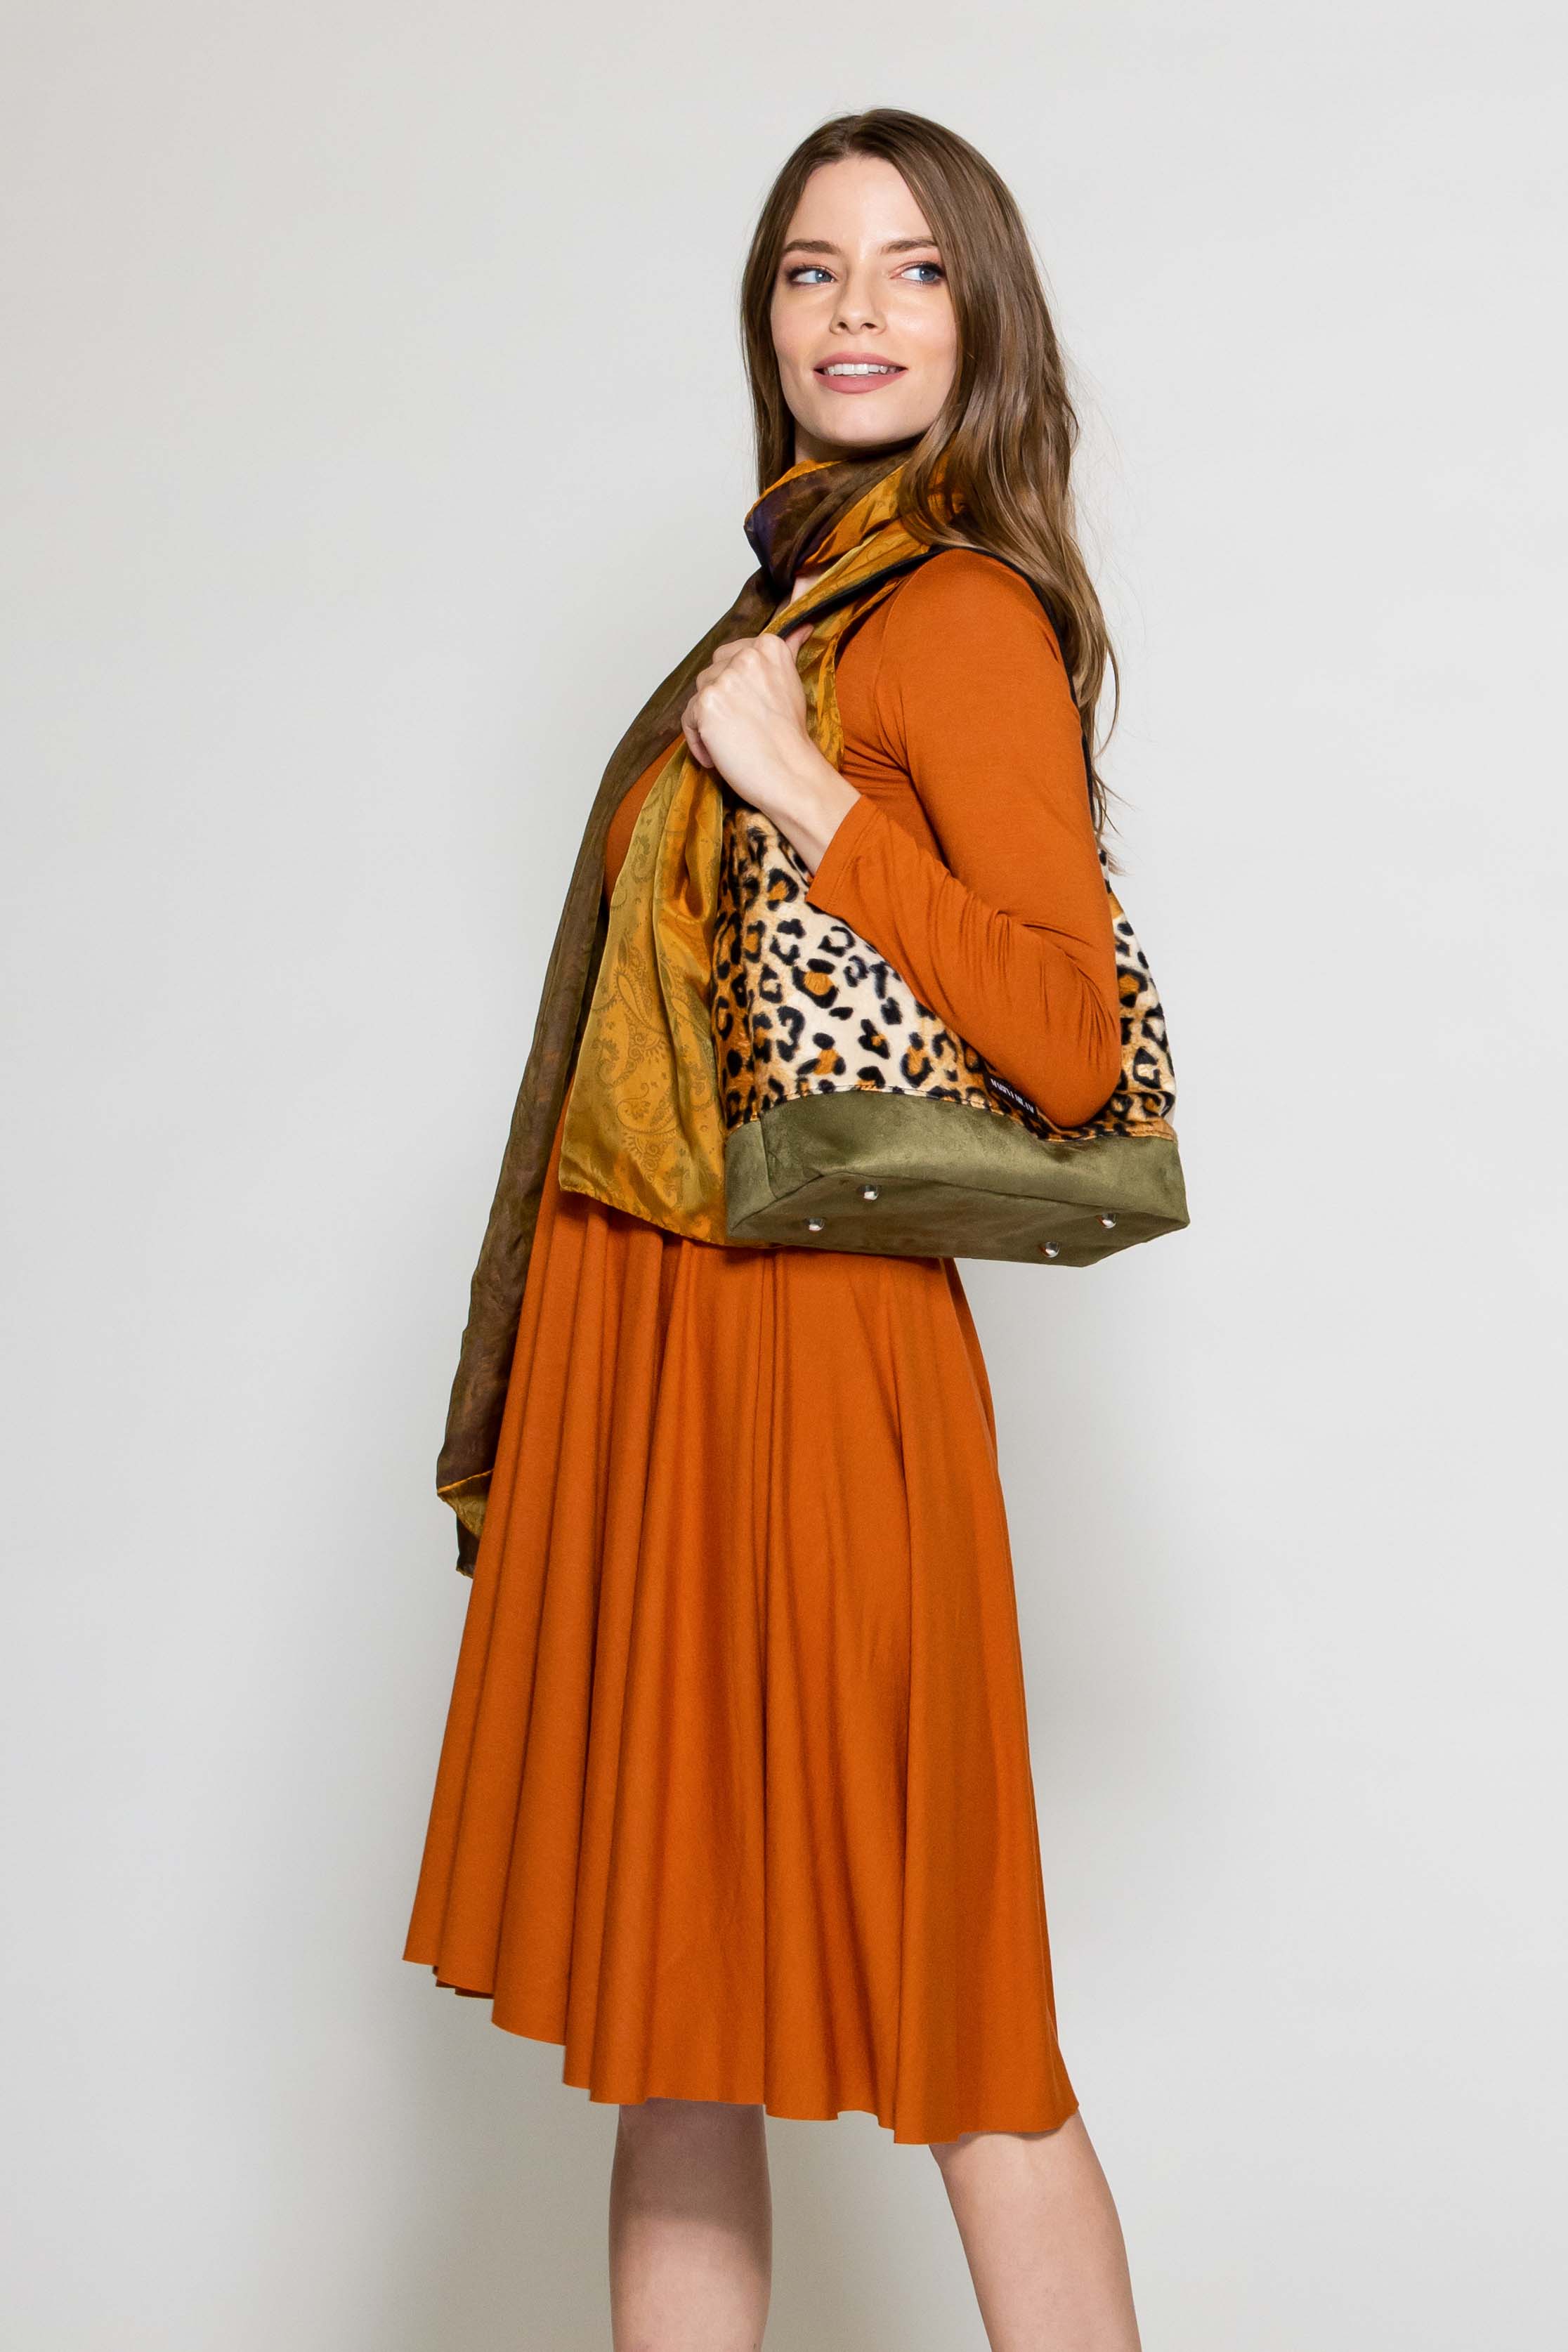 Marisé Eco . Couture DRESSES Venice Orange Long Sleeve Dress